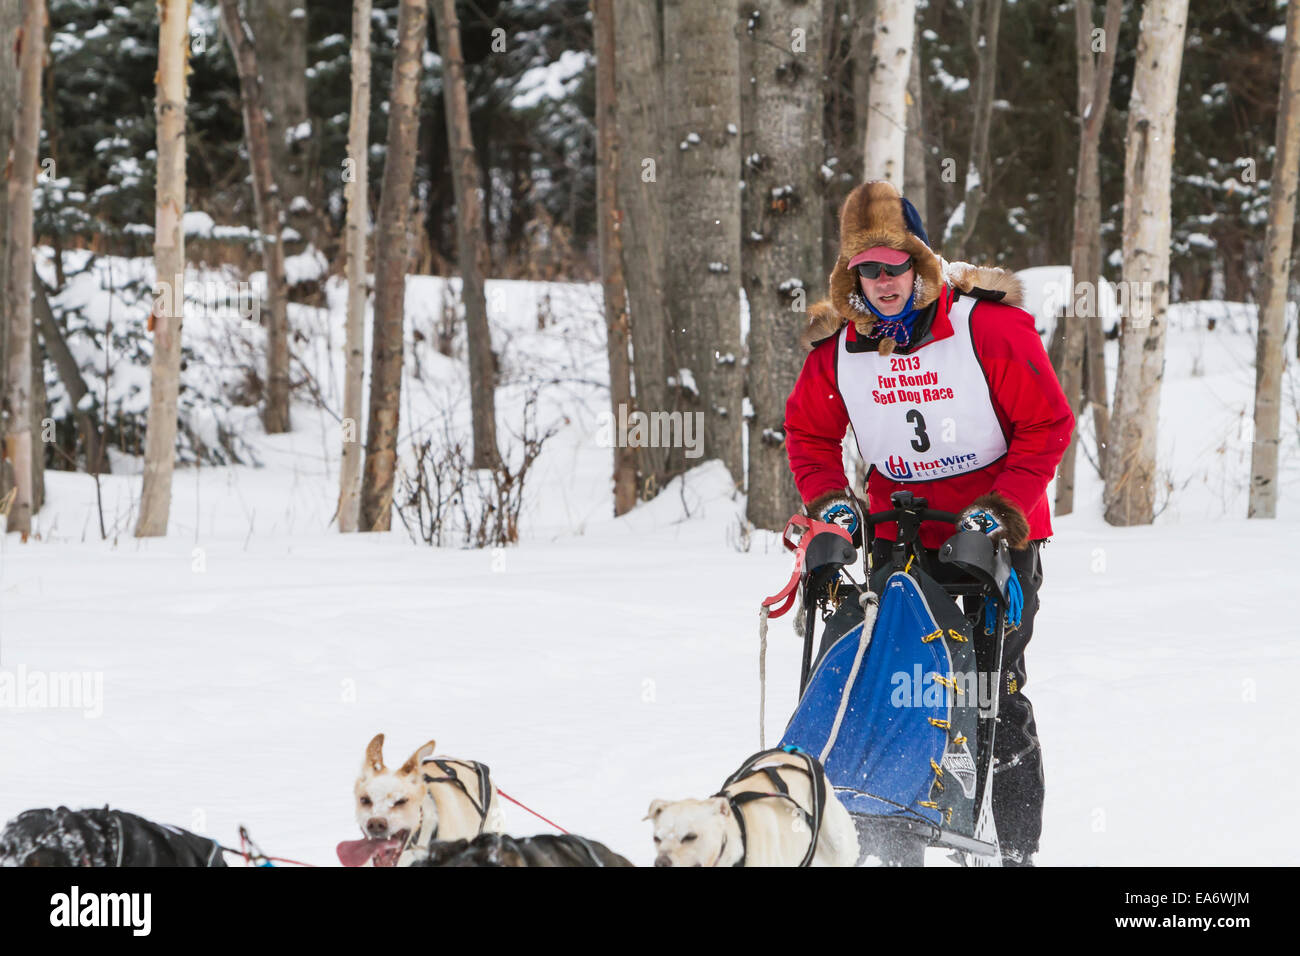 La raza,Husky,nieve,Bosque,Mushing, trineos de perros Foto de stock